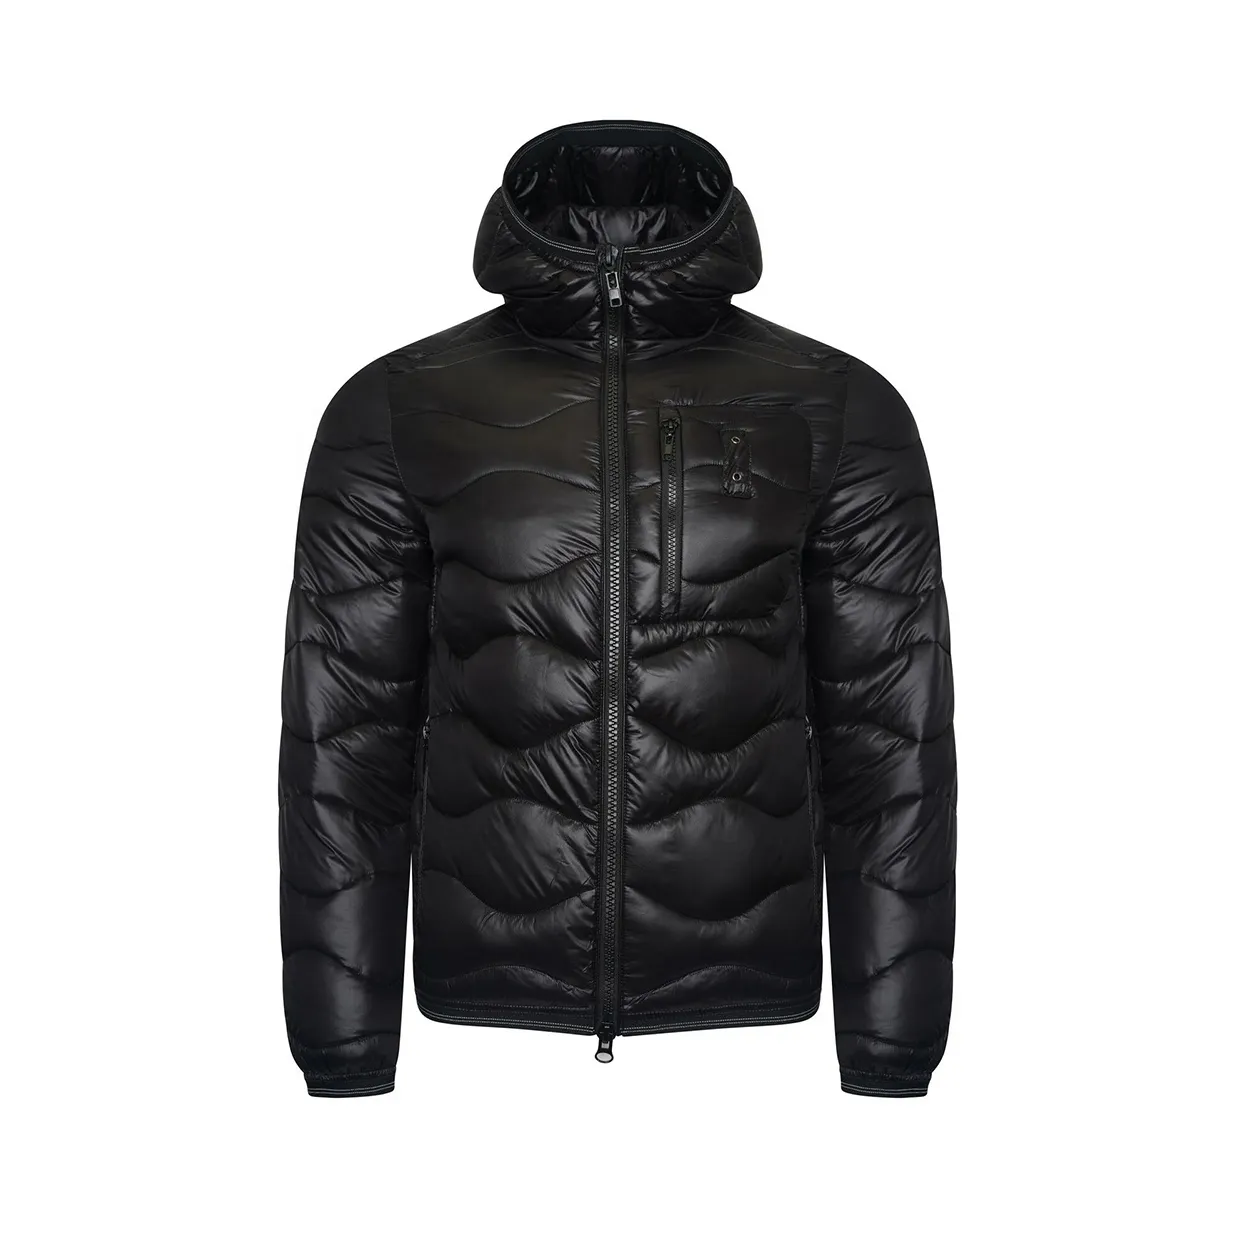 2021 남성 호흡기 자켓 버블 퍼퍼 코트 남성 다운 재킷, 추운 날씨 겨울 통기성 야외 남성 겨울 자켓